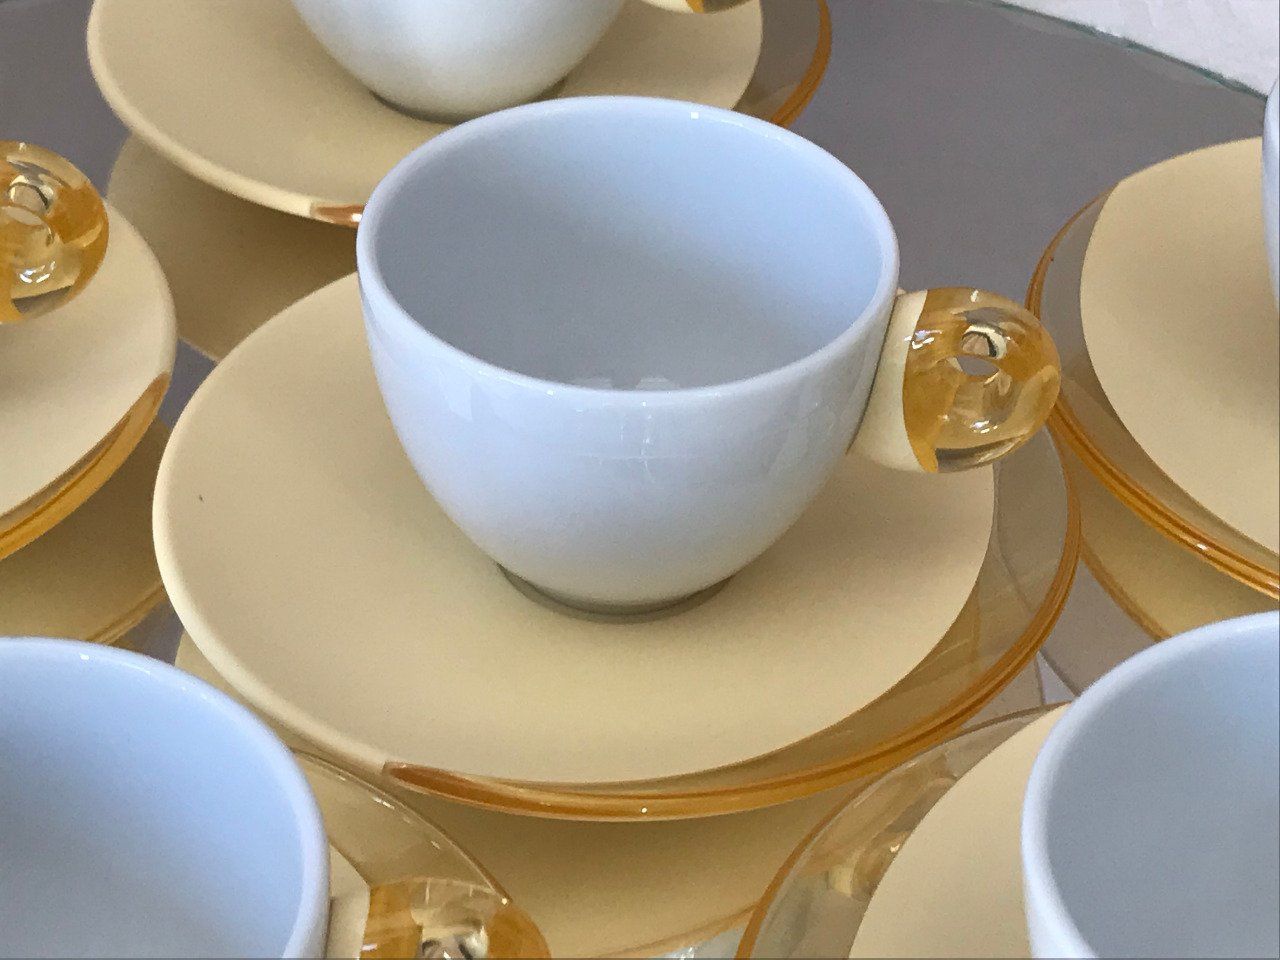 Tasses à café GUZZINI - Béllotte-Design